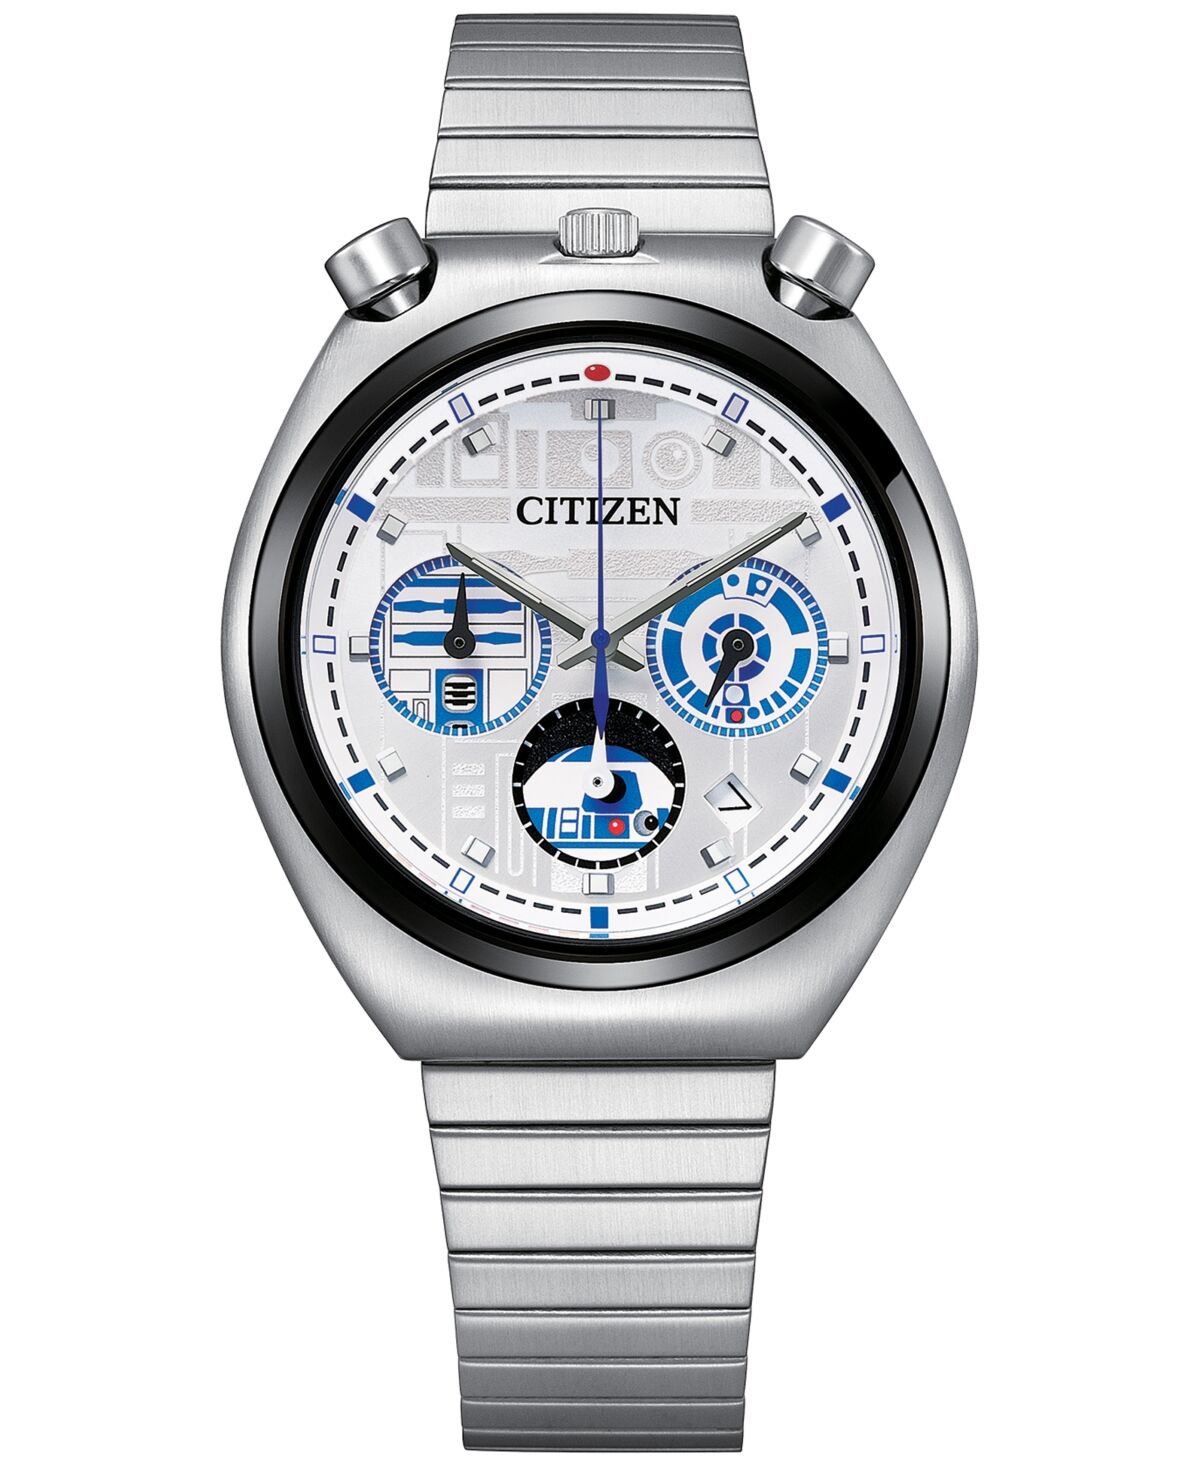 Citizen Men's Star Wars R2-D2 Stainless Steel Bracelet Watch 38mm - Silver-tone